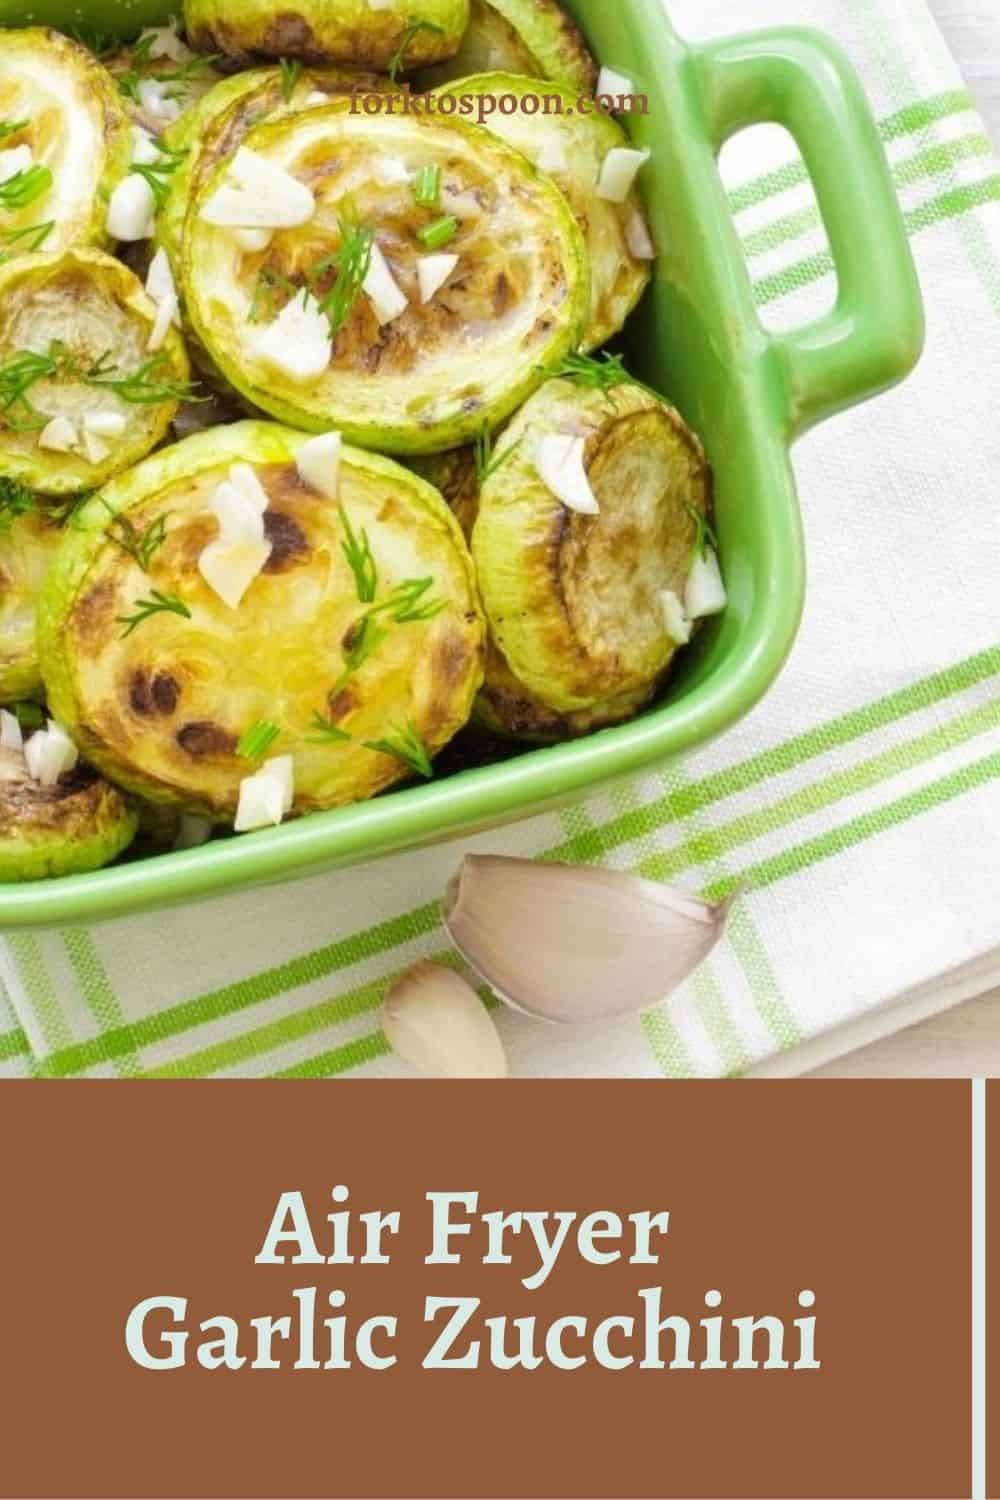 Air Fryer Garlic Zucchini